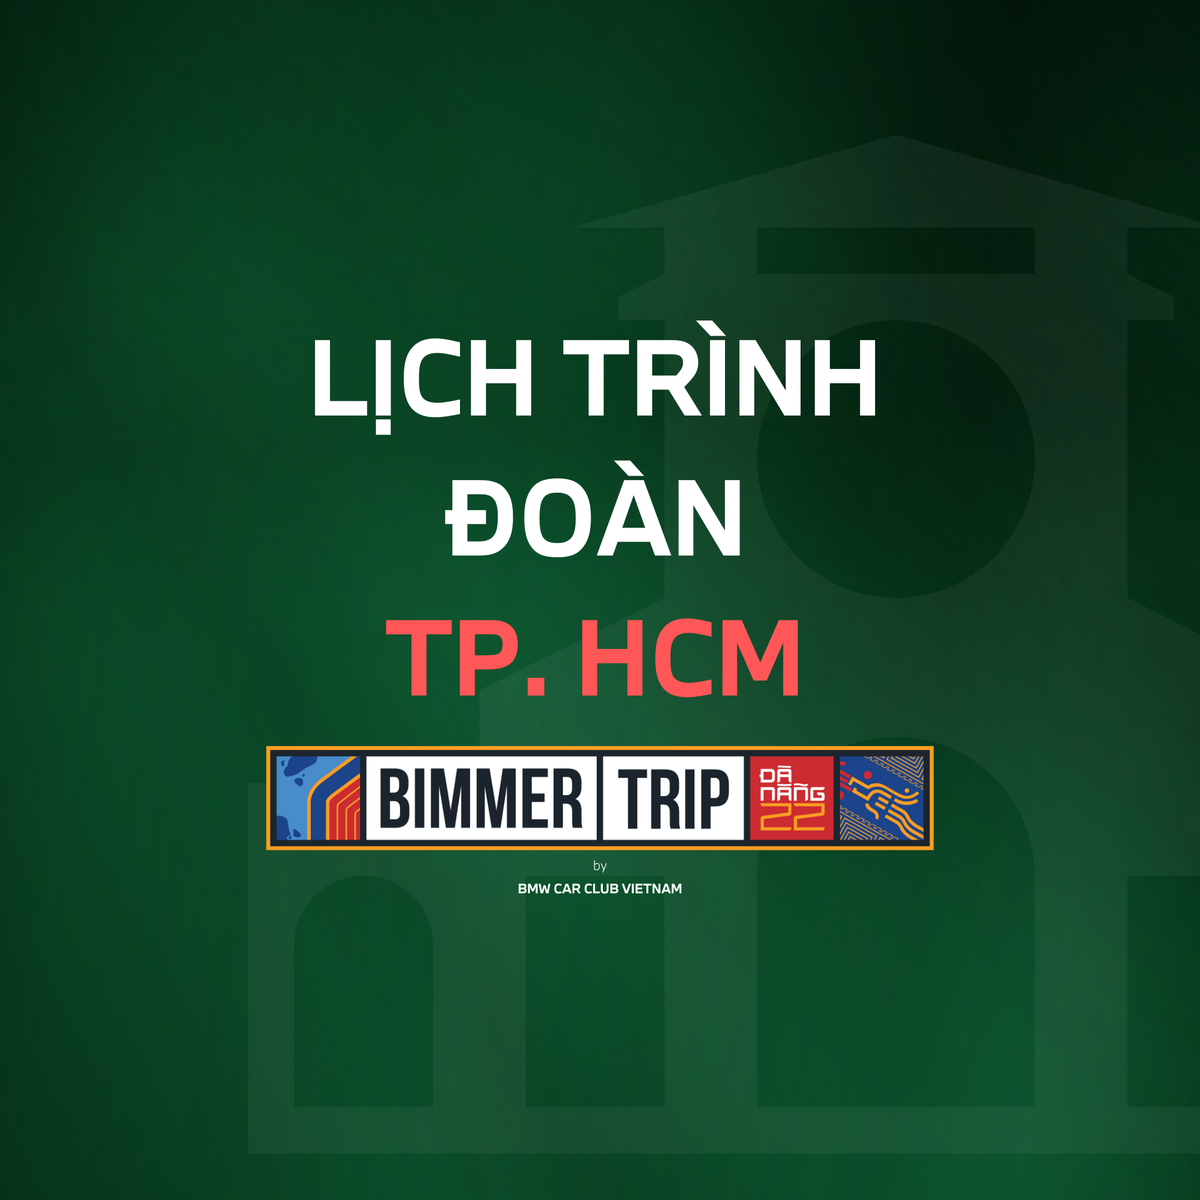 Lịch trình đoàn BIMMERTRIP xuất phát từ TP. HCM đến Đà Nẵng